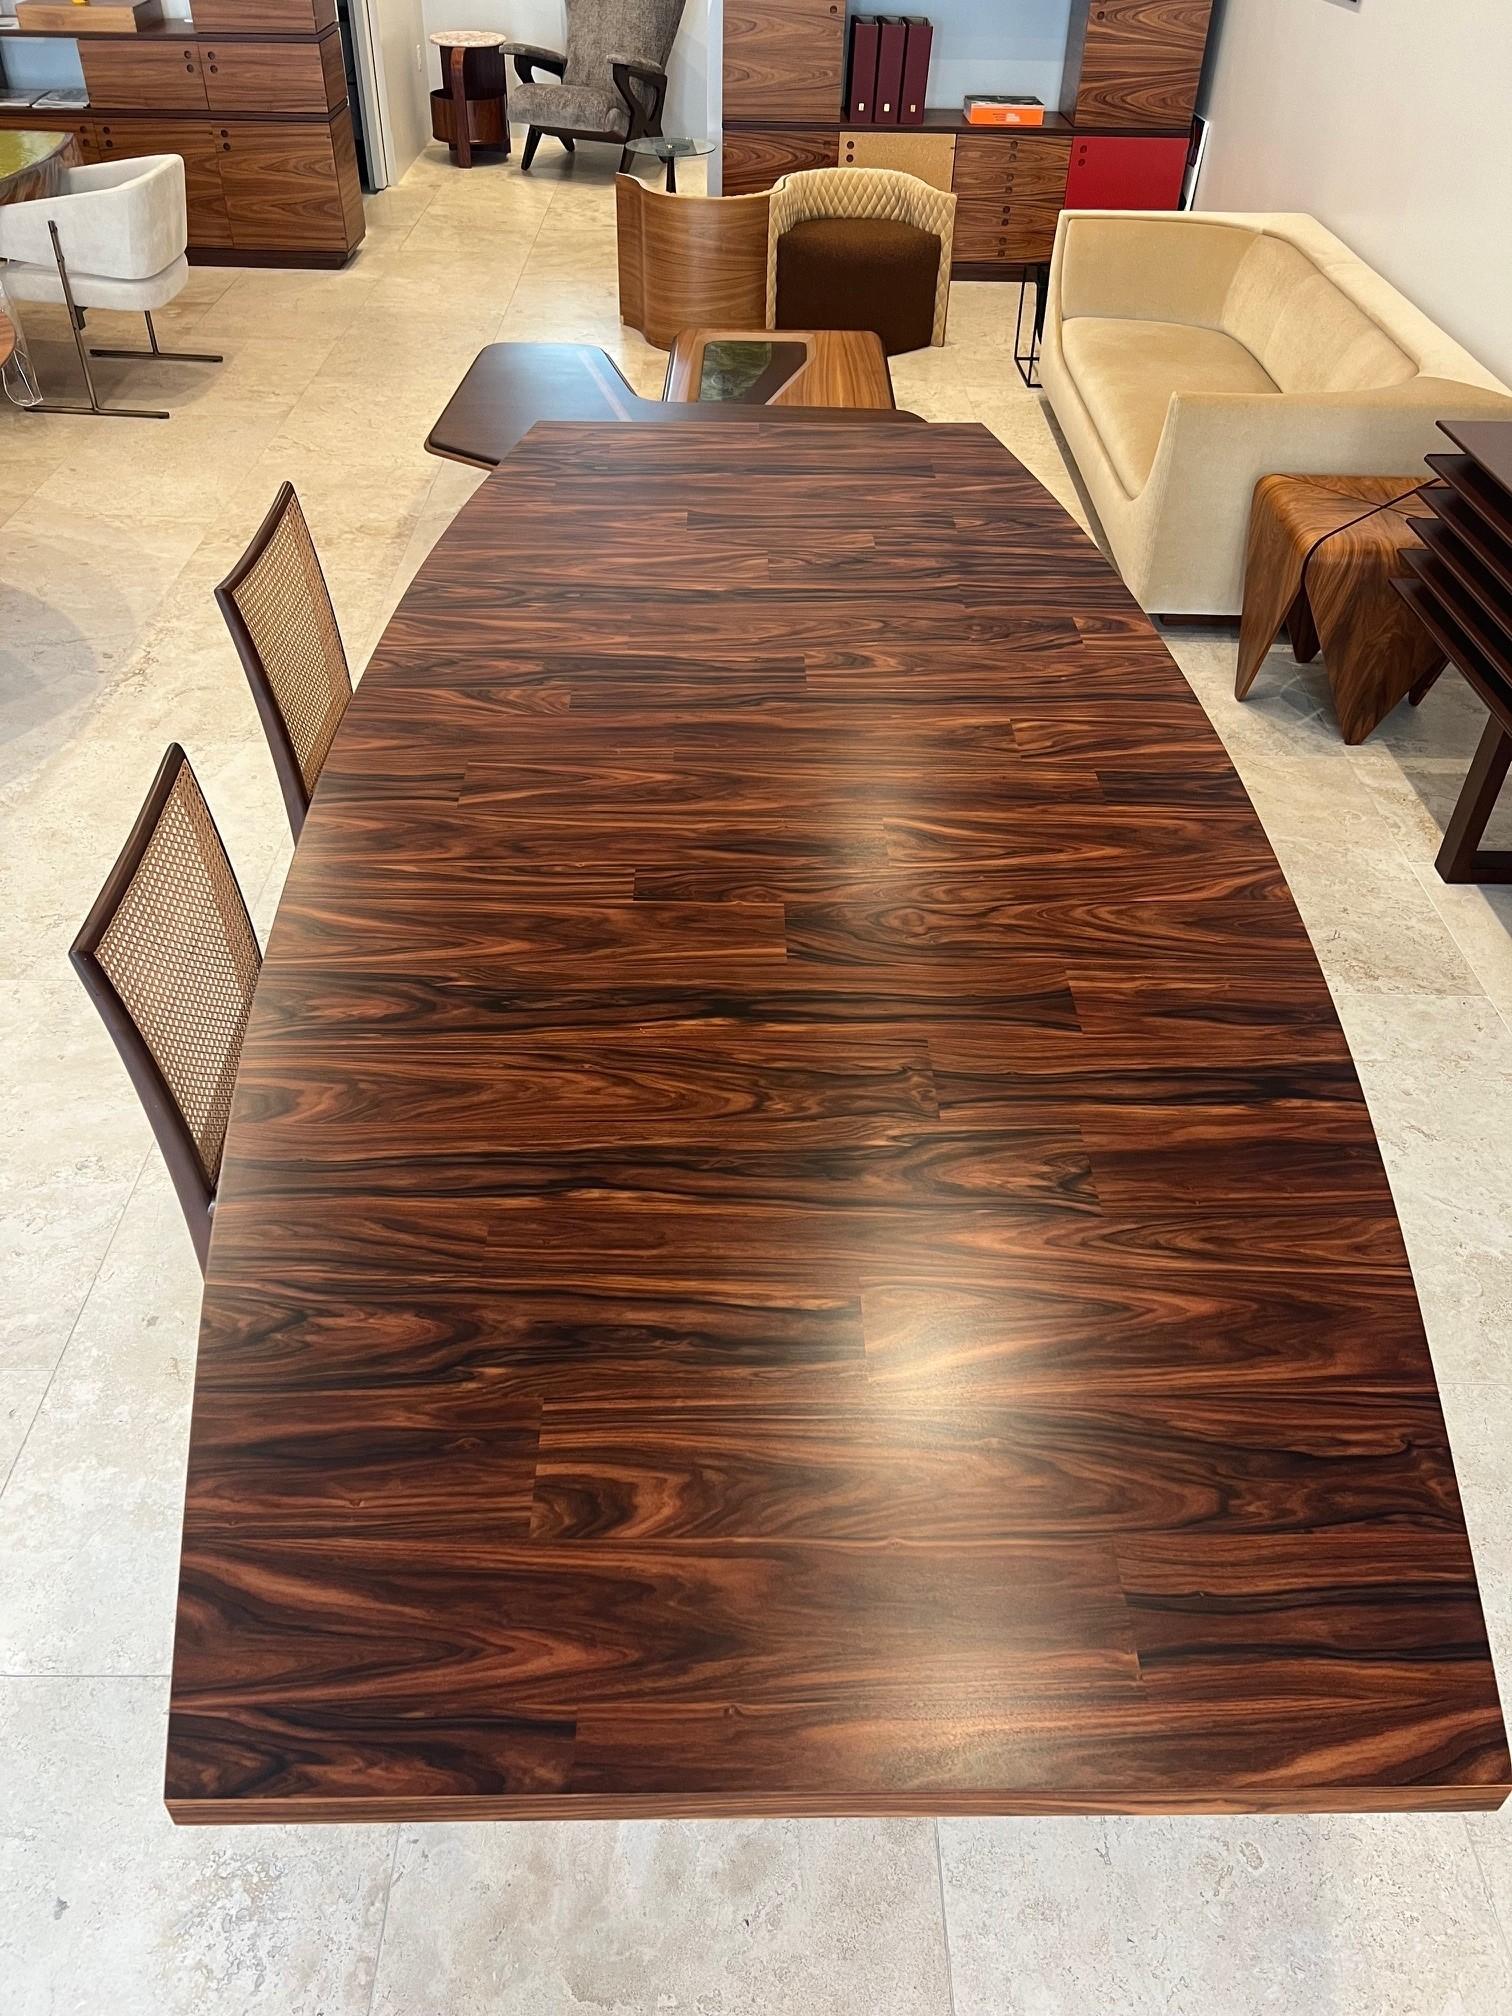 Les tables à manger Guanabara ont été conçues par Jorge Zalszupin en 1959. 
Le plateau de la table est fabriqué à partir de bois de différentes teintes pour créer un beau contraste et repose sur une base en ciment recouverte de cuir.
Cette pièce est